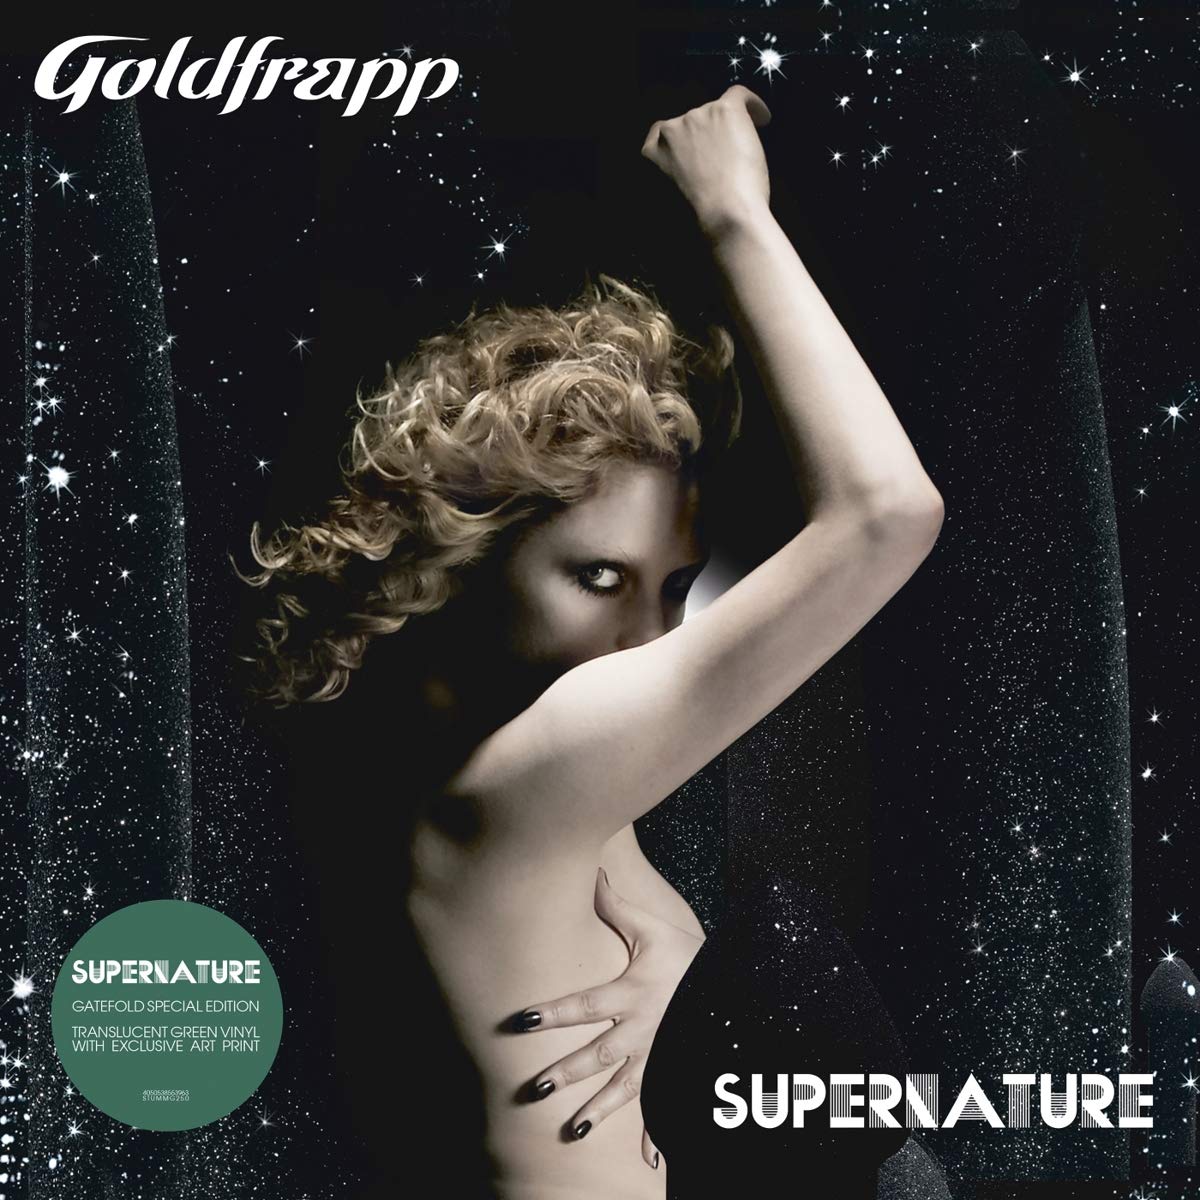 GOLDFRAPP - Supernature - LP - Transparent Green Vinyl